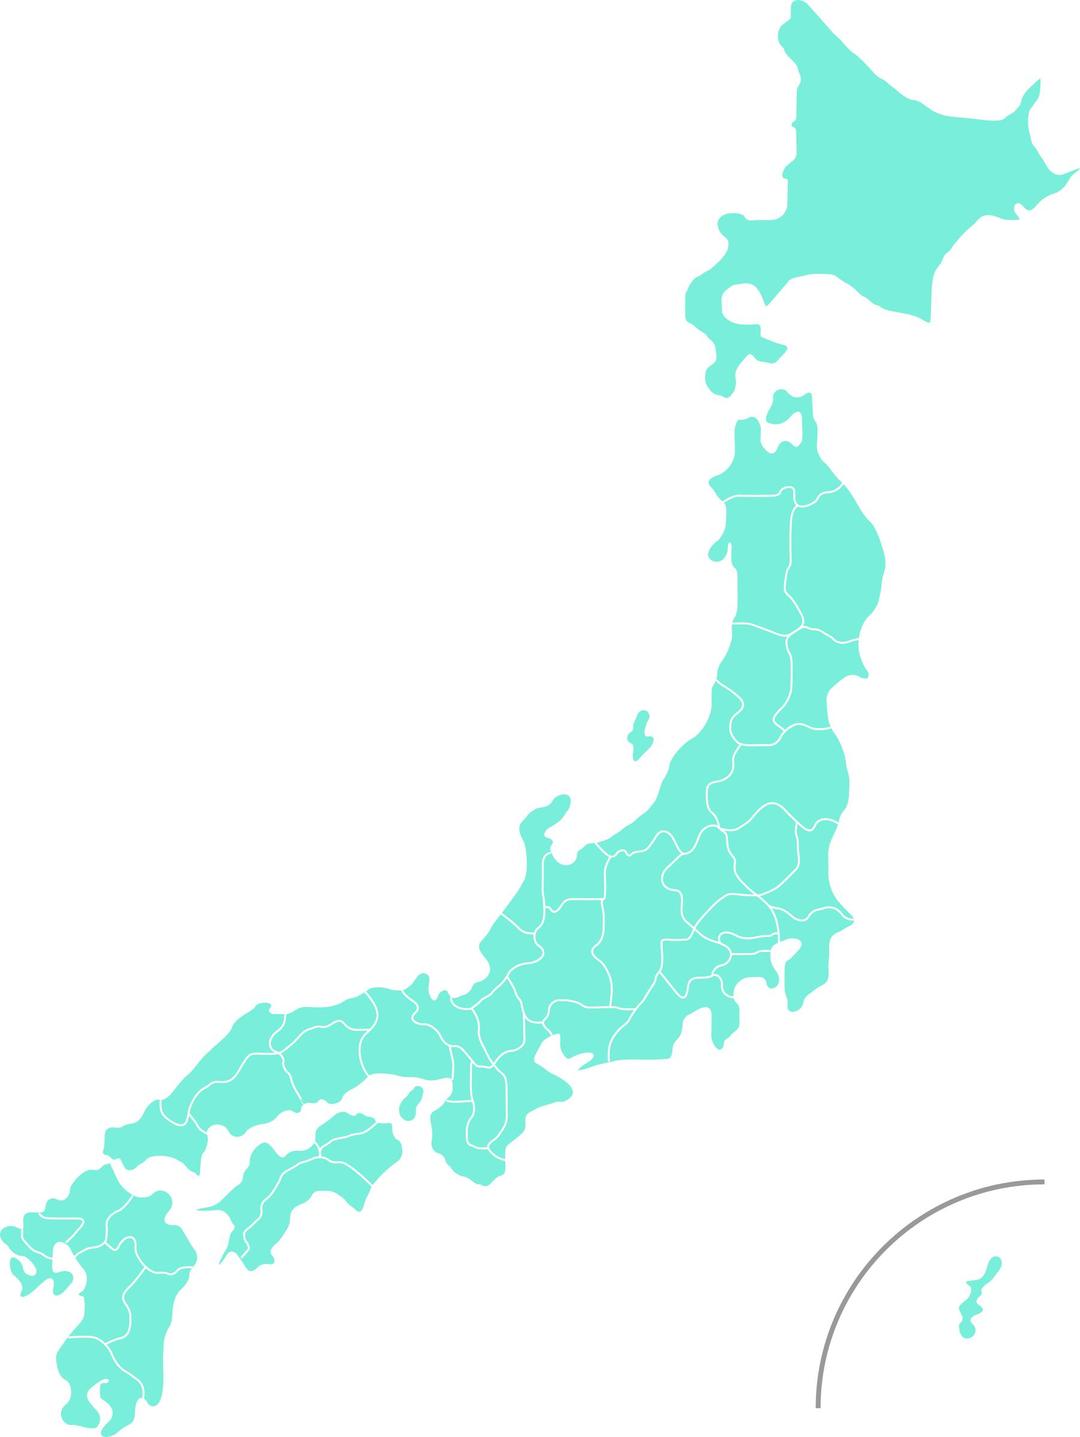 Map of Japan png transparent